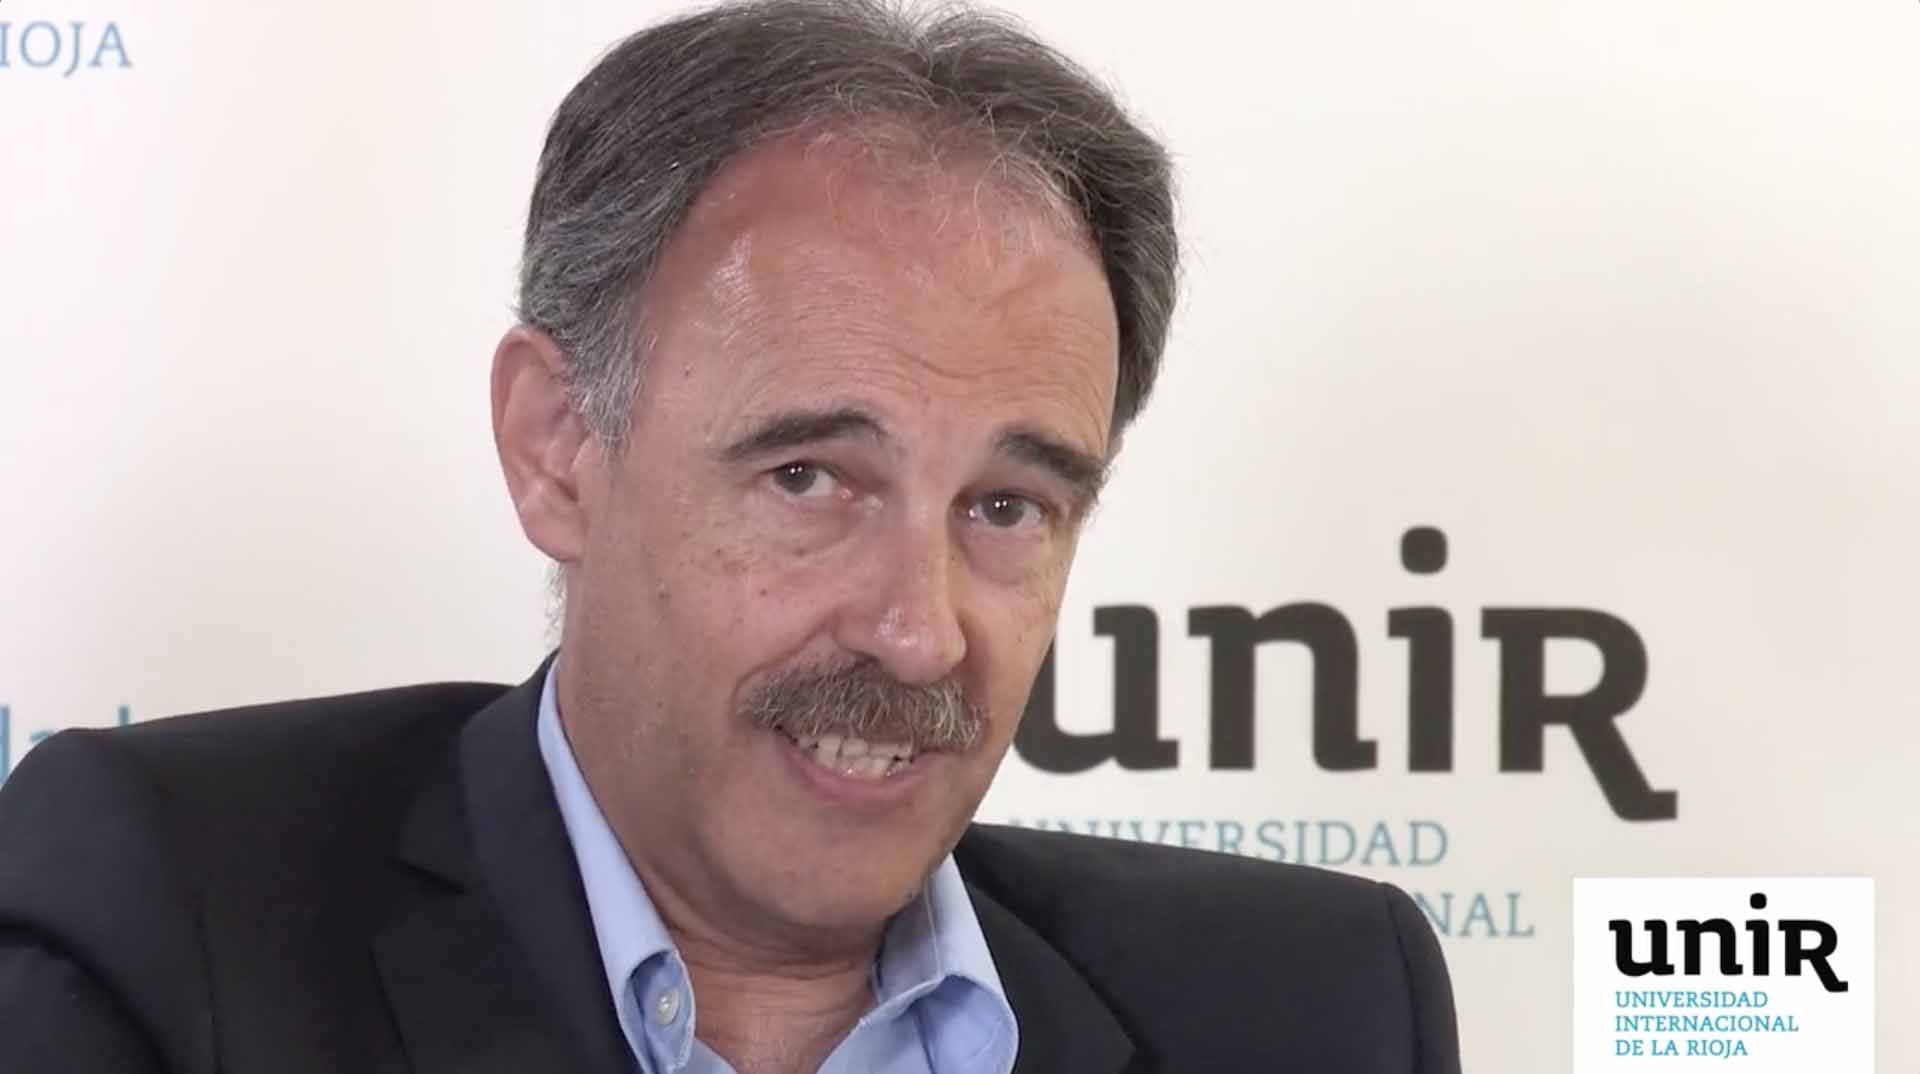 La-informacion-objetiva-Cubriendo-a-Aznar-Zapatero-y-Rajoy